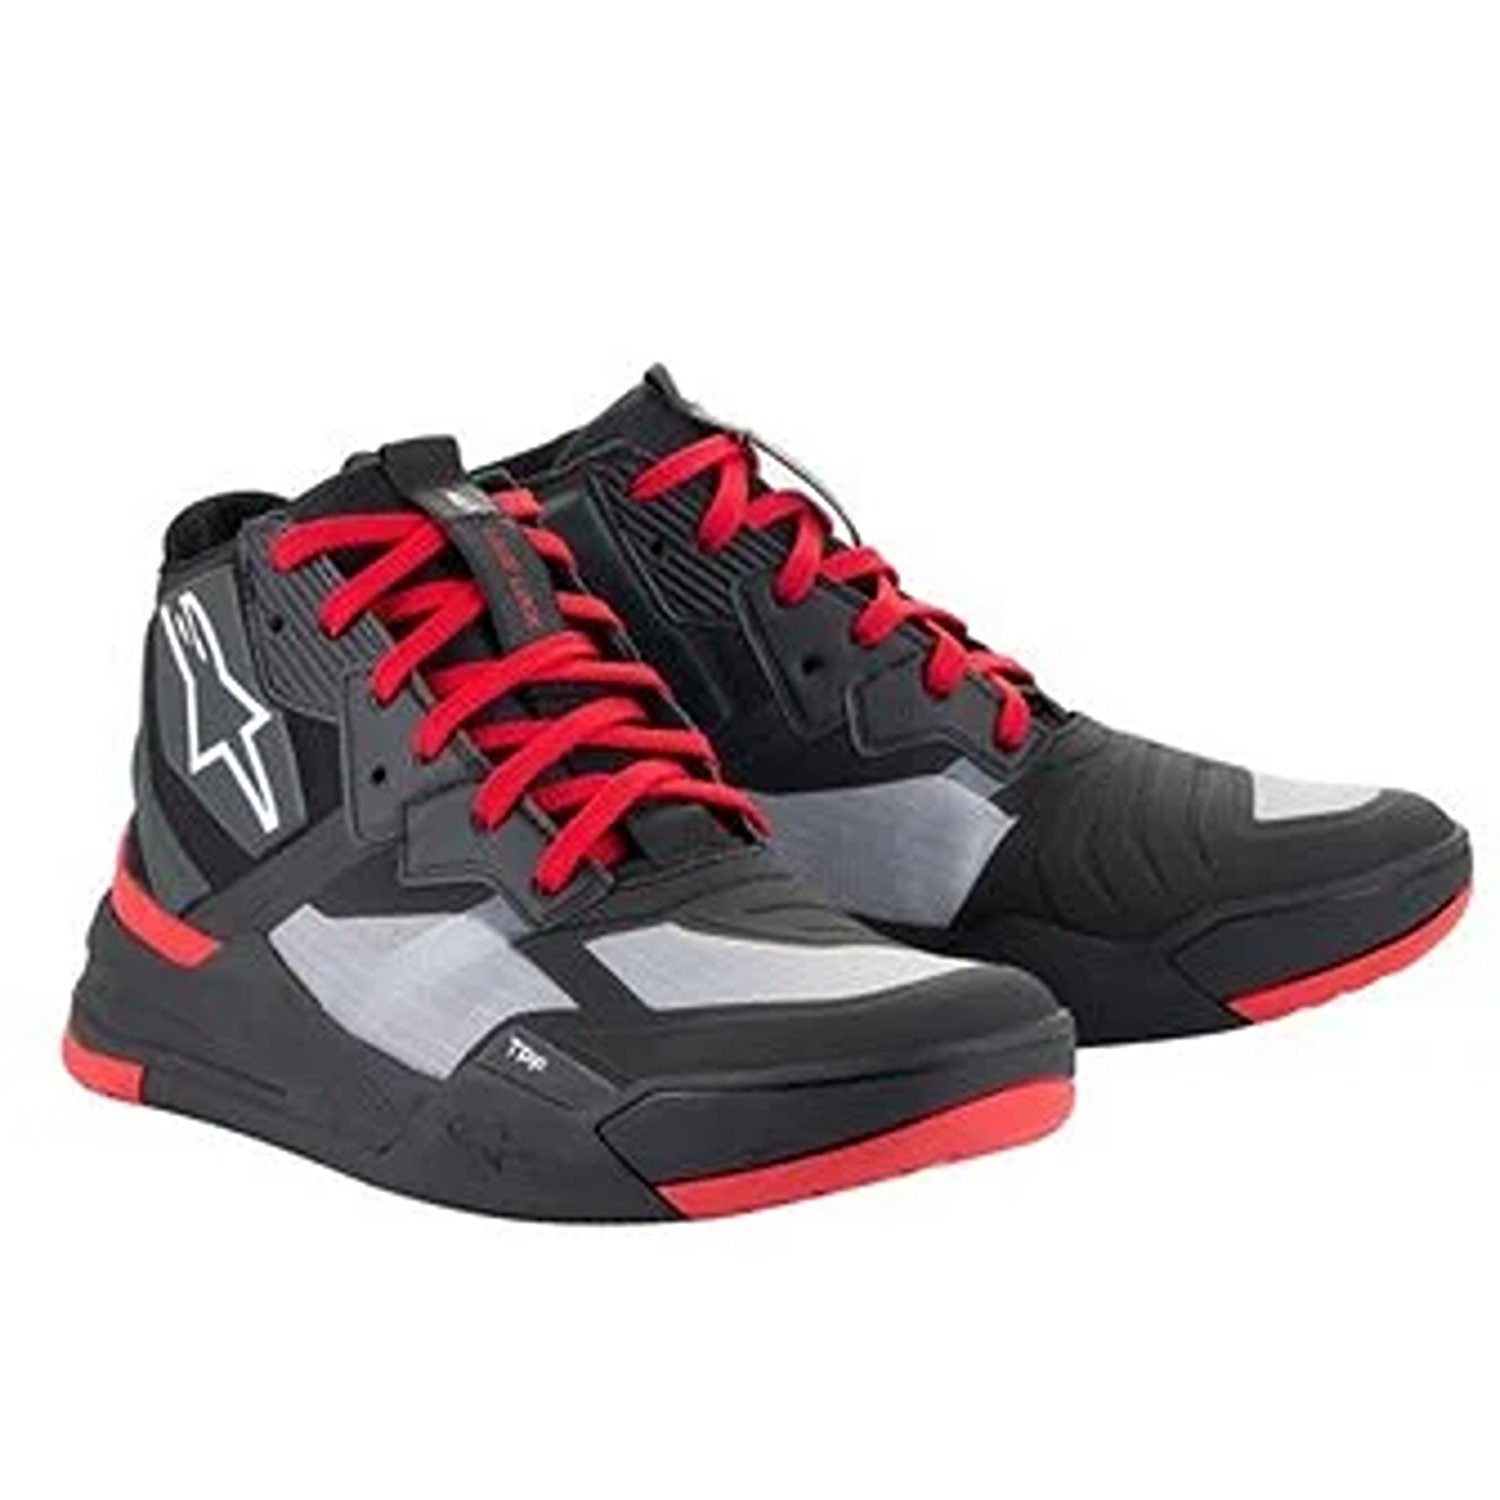 Image of Alpinestars Speedflight Shoes Black Bright Red White Größe US 13